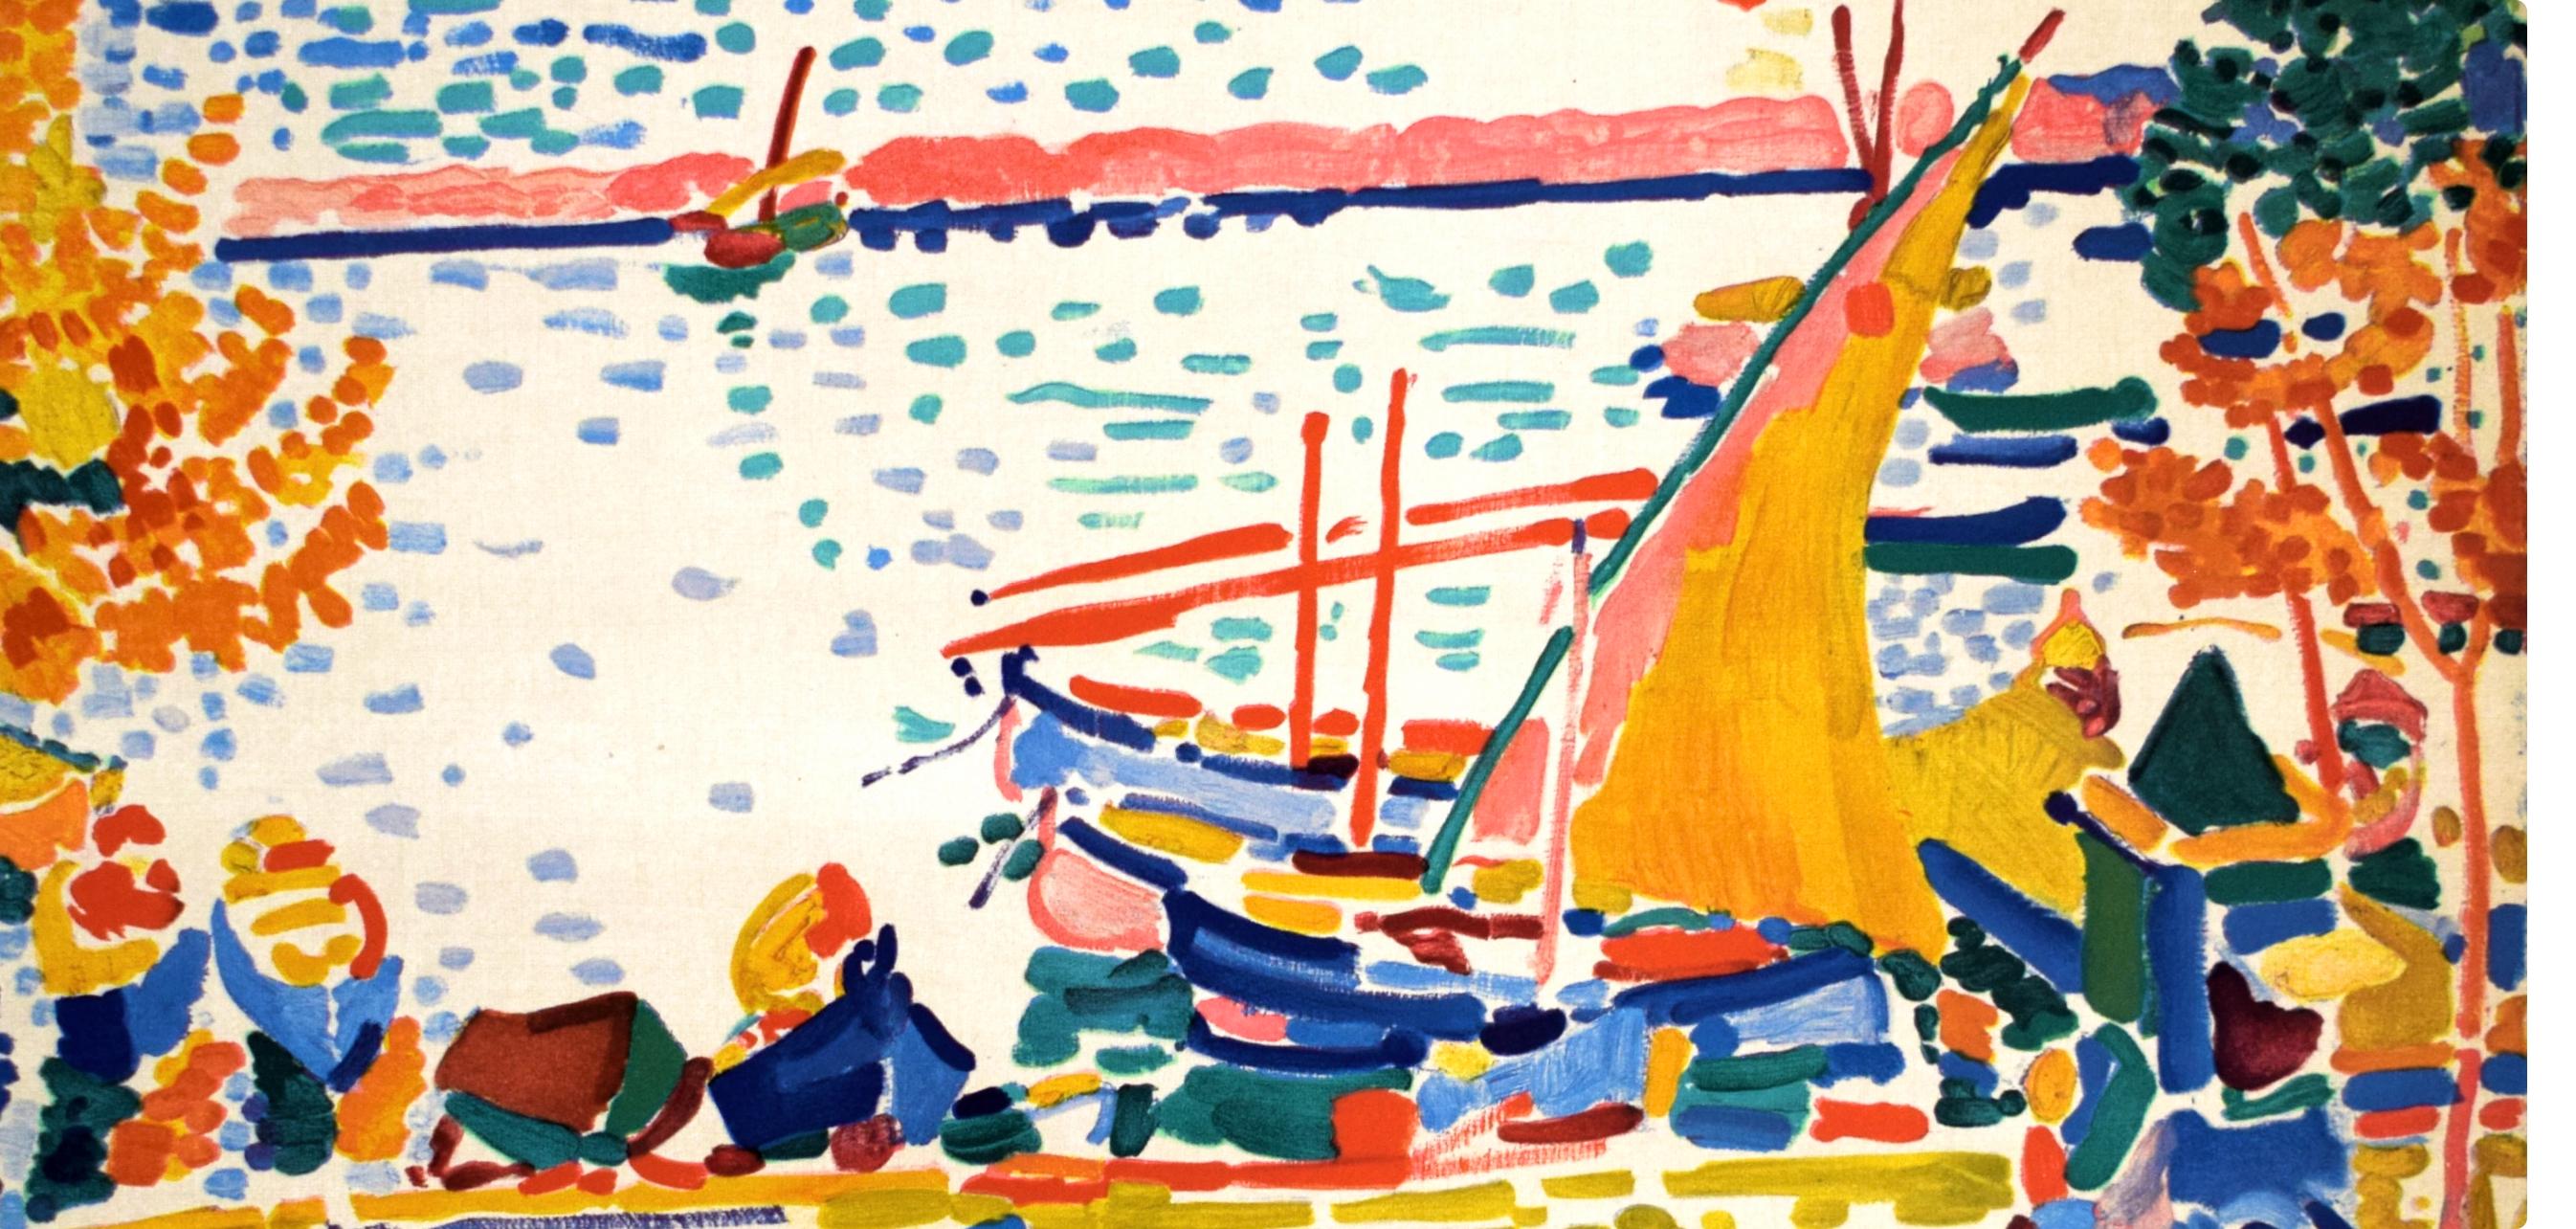 Derain, Port de Collioure, Fauves, The Collective Pierre Lévy (d'après) - Moderne Print par André Derain